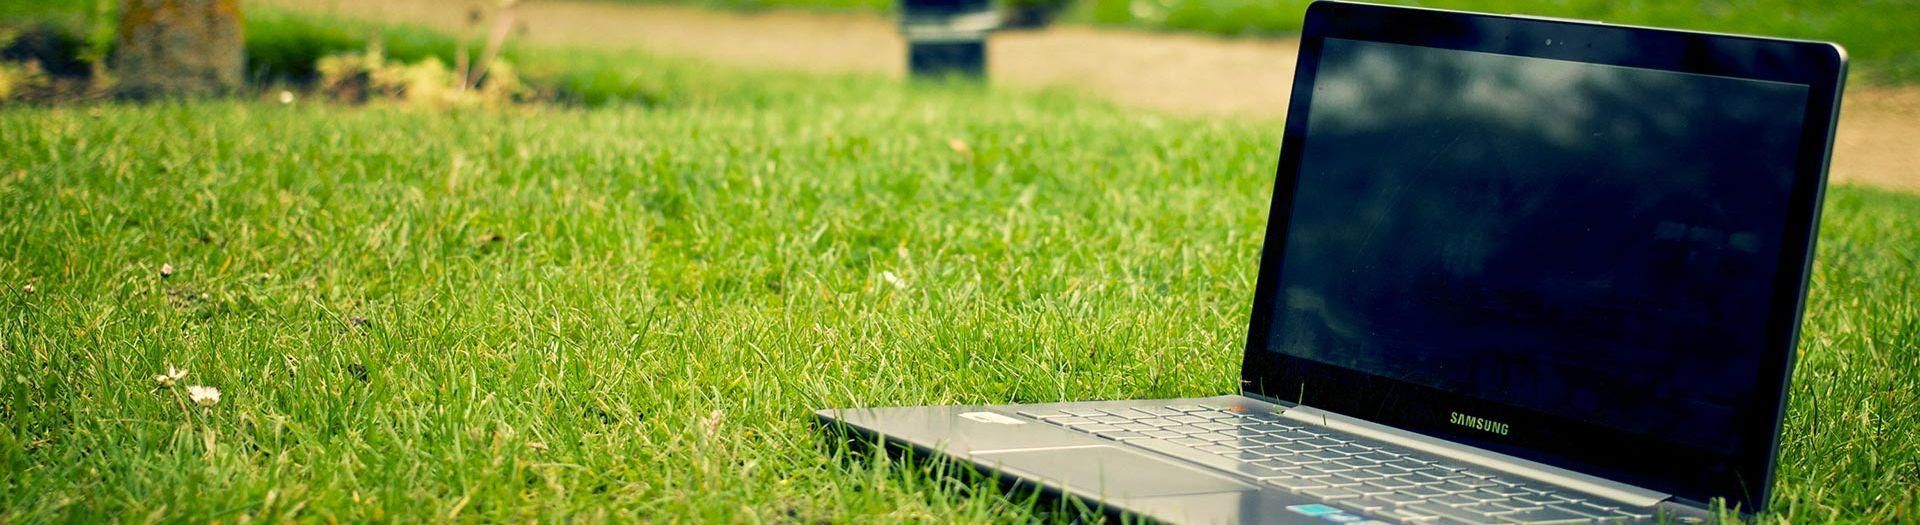 laptop-notebook-grass-meadow-1c6fa79c Schlacht info